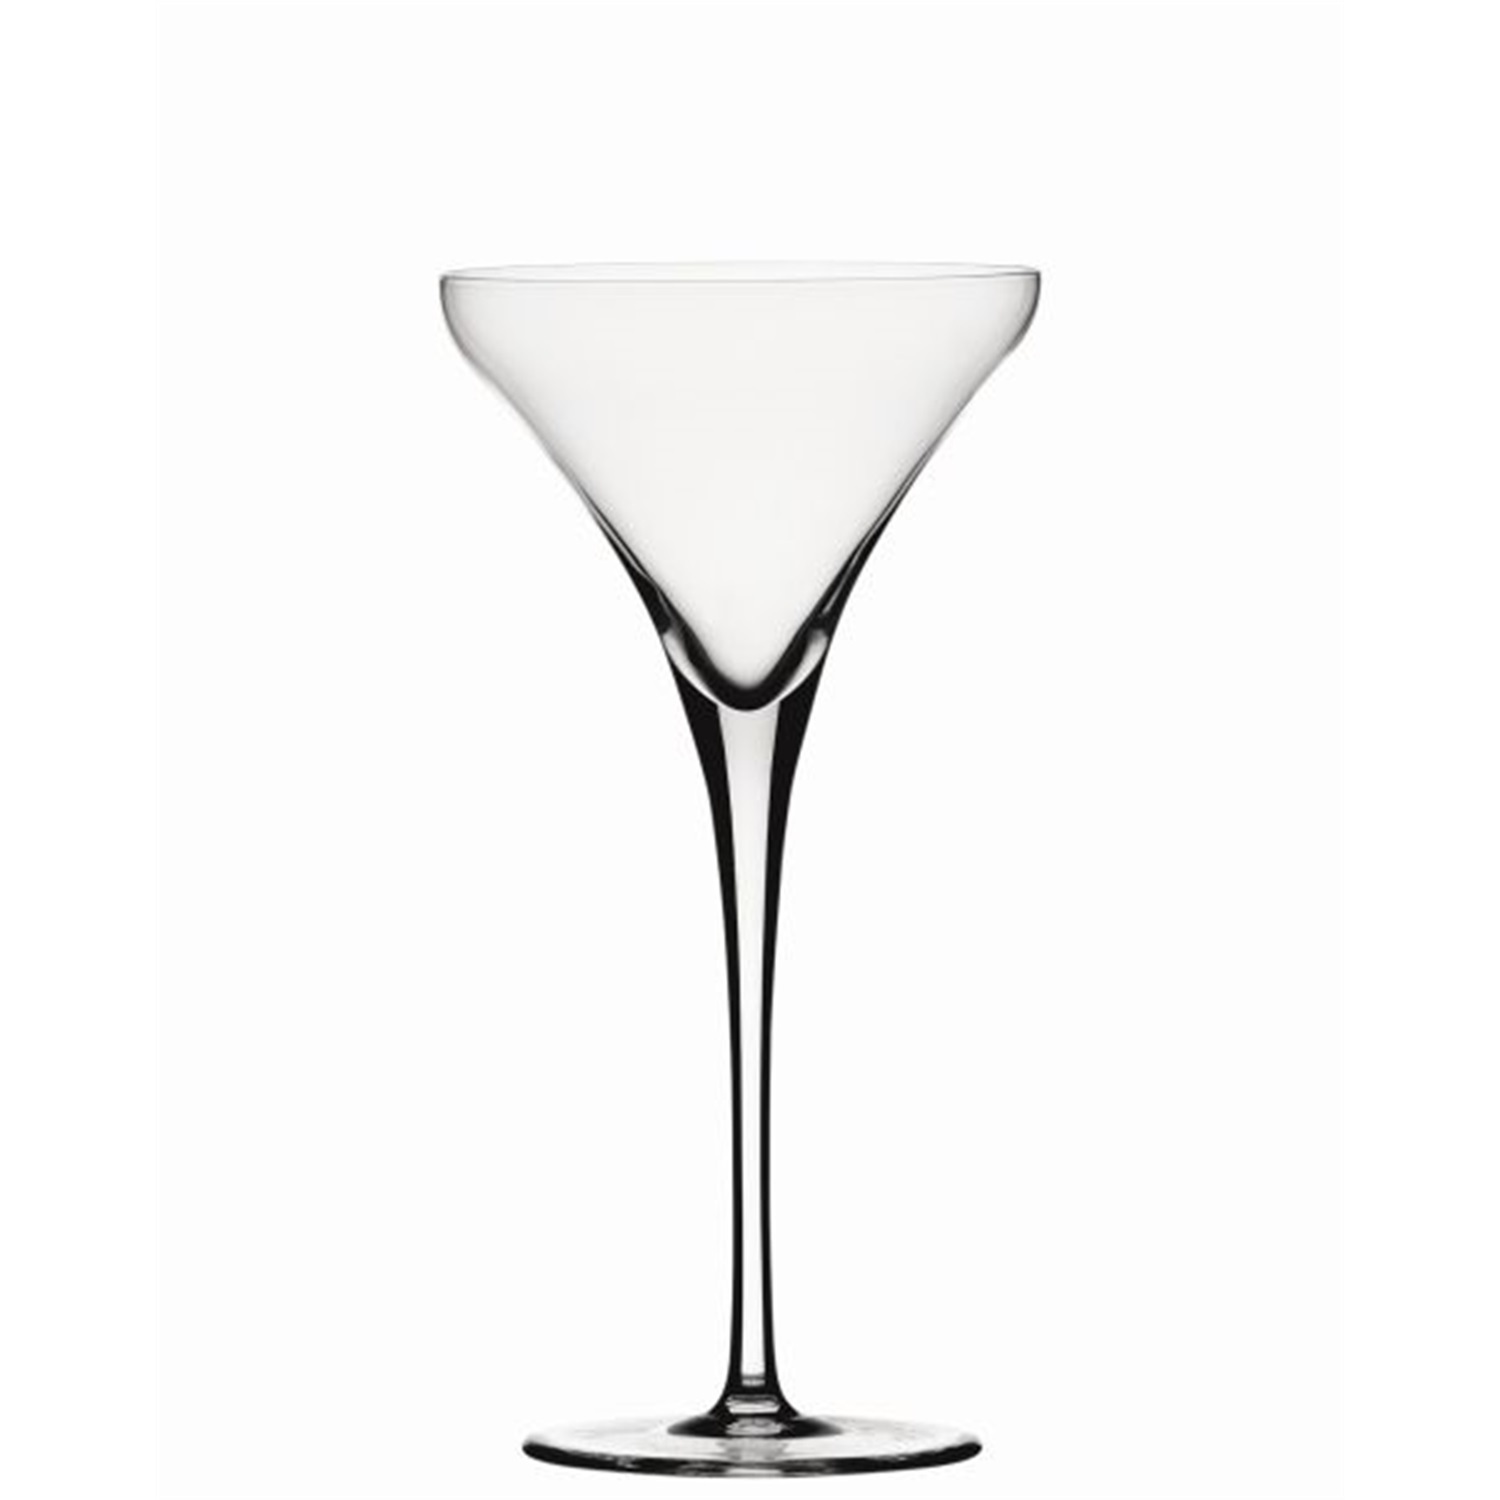 Spiegelau Willsberger Anniversary martiniglas - set van 4